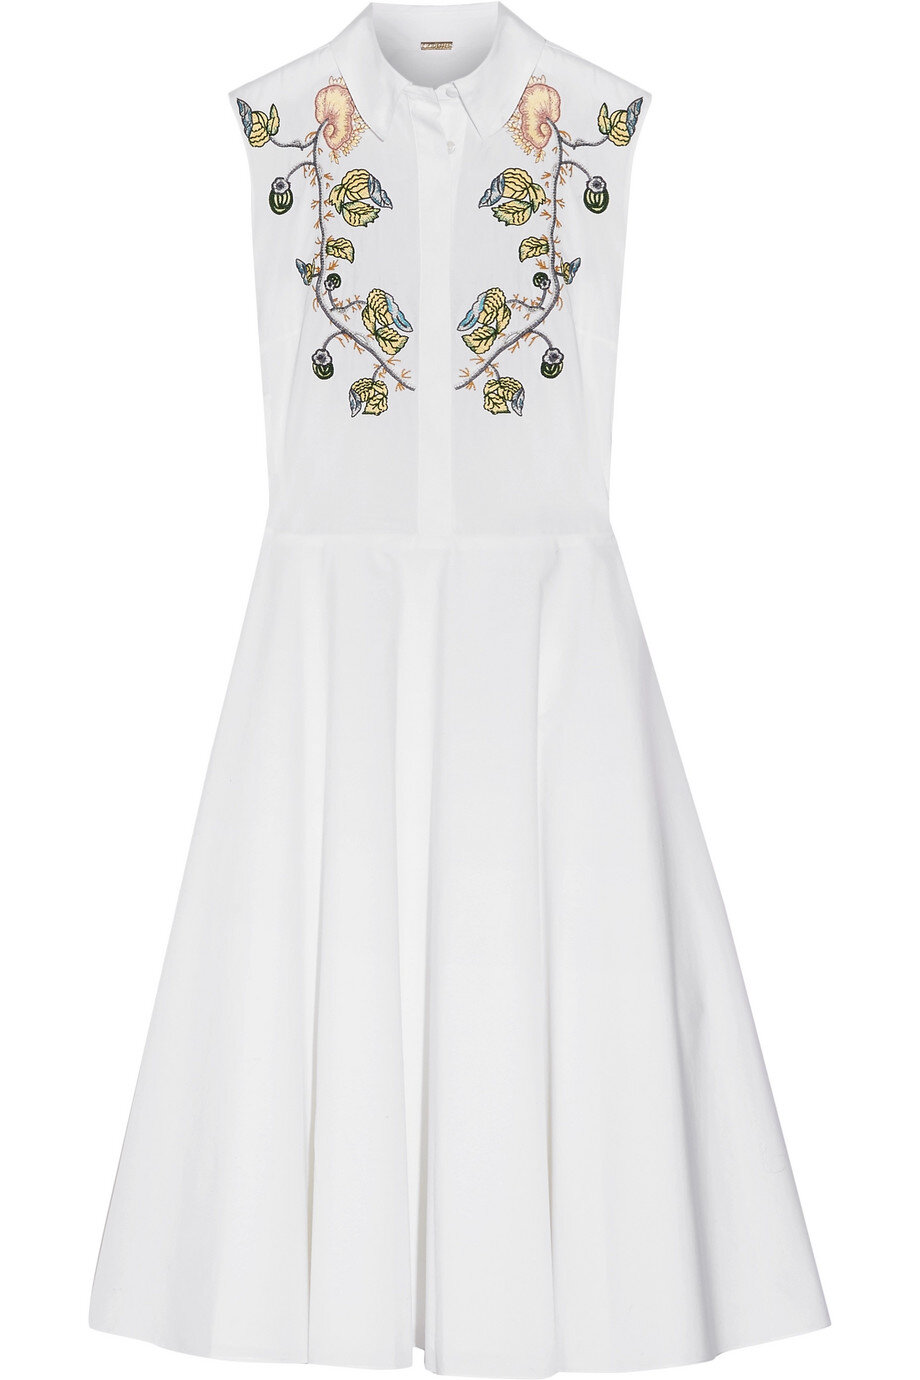 Adam Lippes Embroidered Cotton Poplin Midi Dress in White.jpg